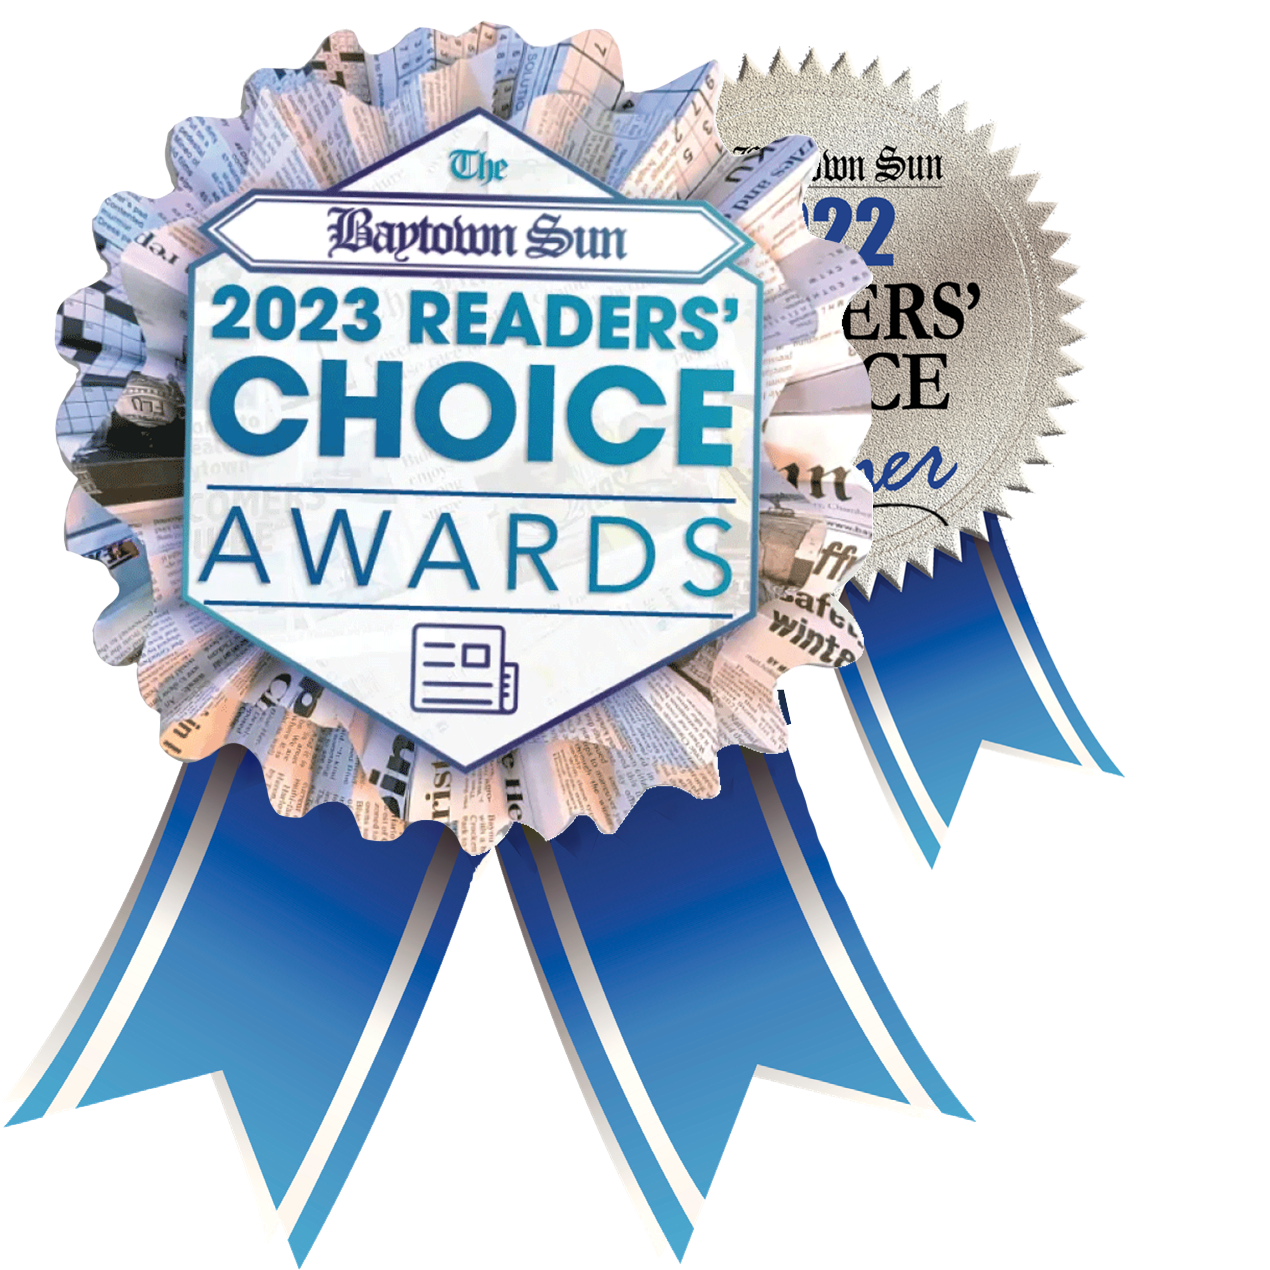 readers choice award 2023 and 2022